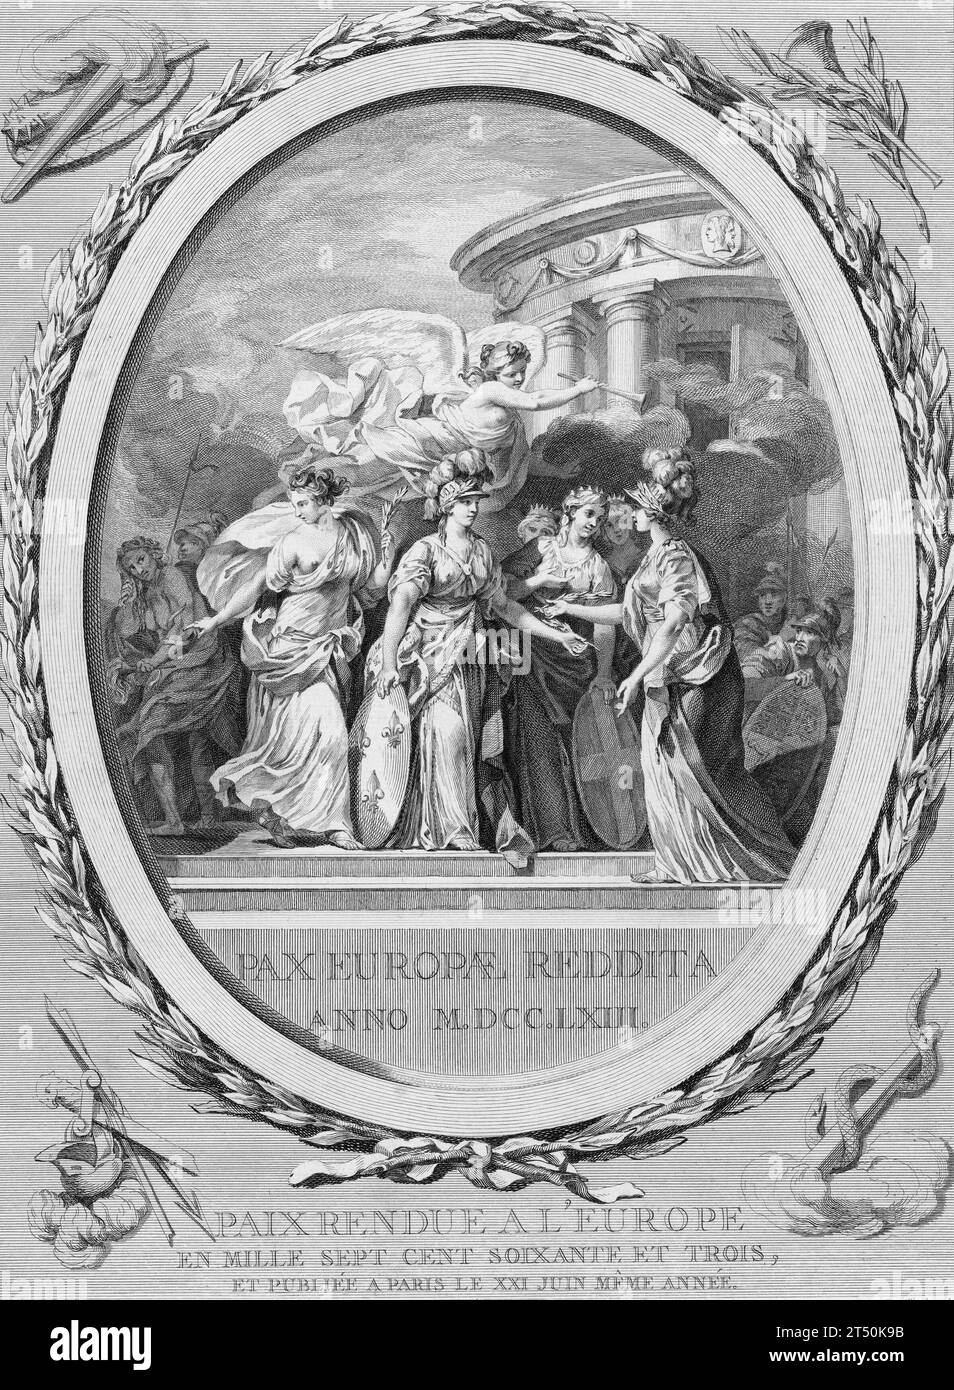 Trattato di Parigi, 1763. Allegoria della Pace di Parigi, intitolata Paix rendue à l'Europe. Foto Stock